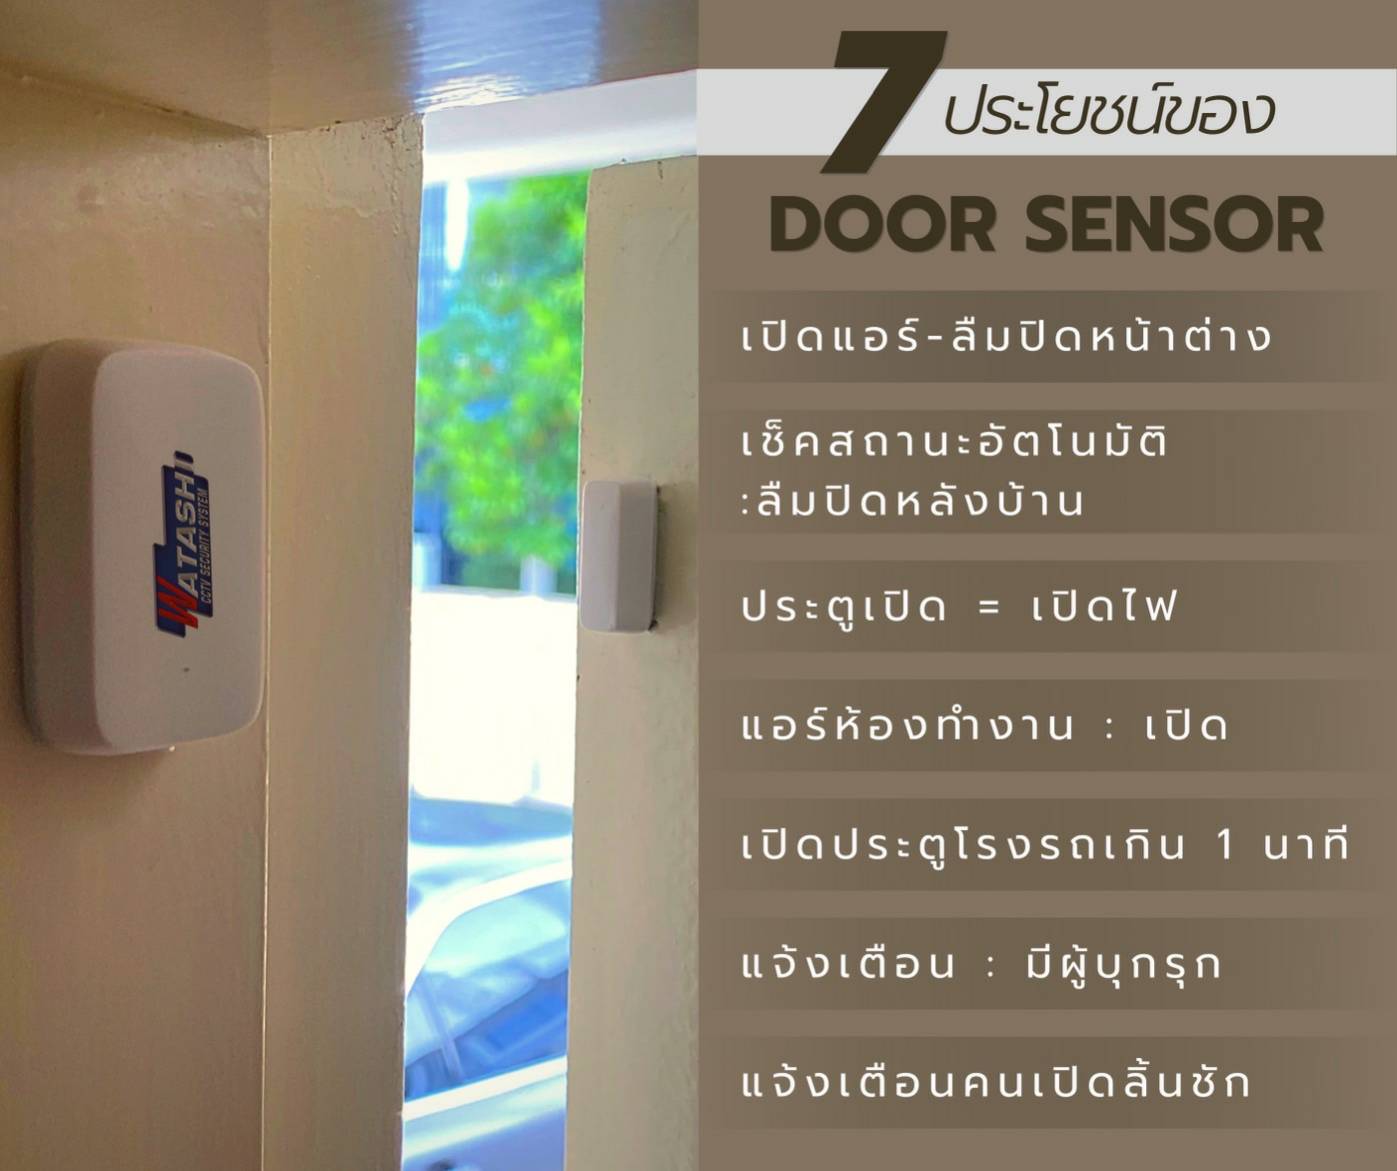 🔥 7 ประโยชน์ของ Door Sensor (มีดีมากกว่าที่คิด)🔥